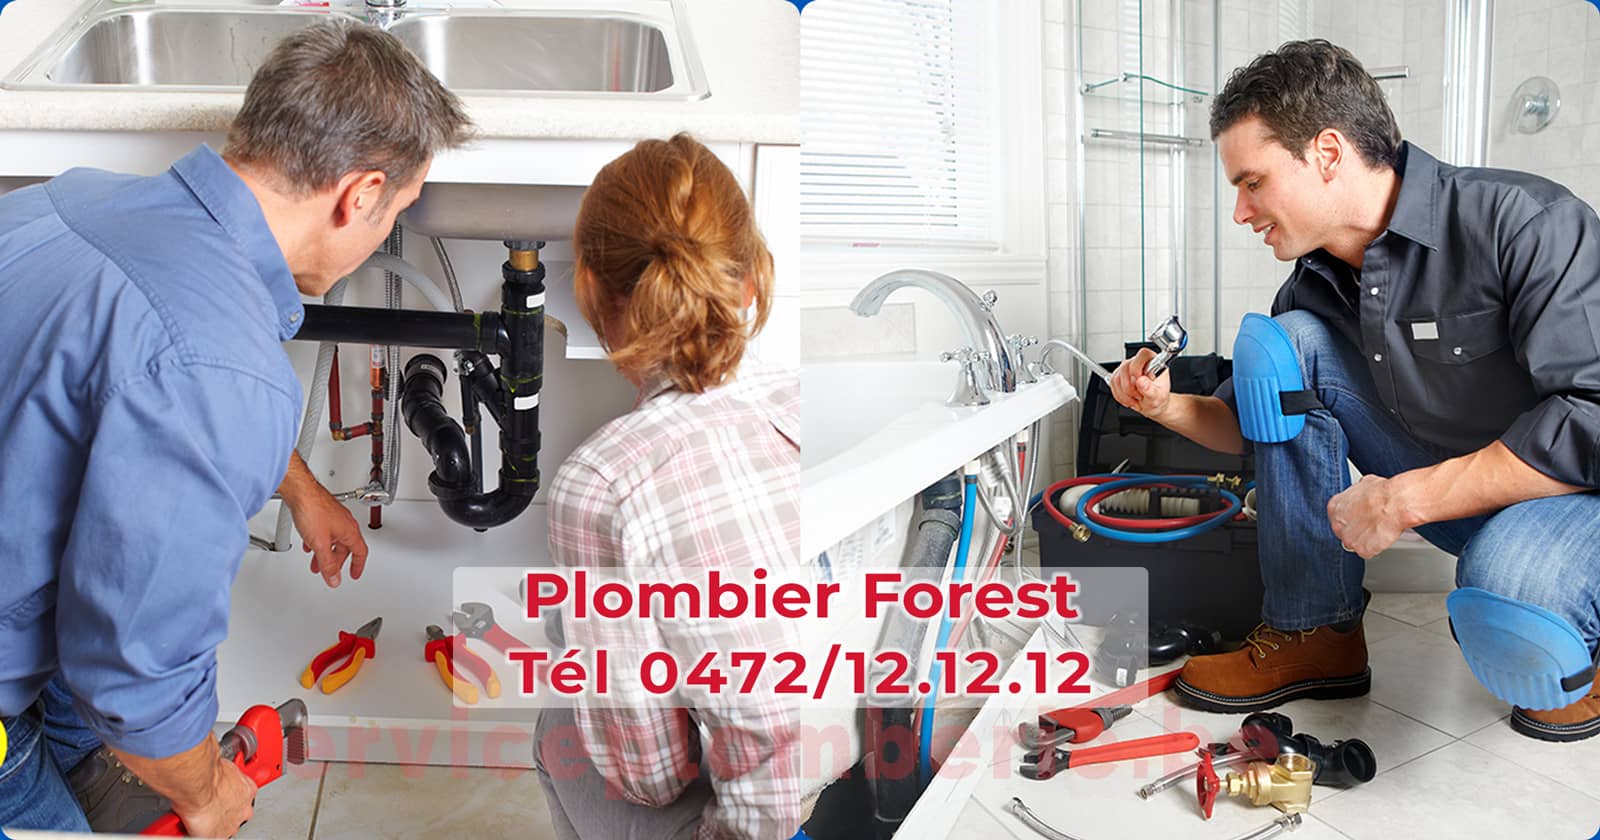 Plombier Forest (Vorst) Agréé Professionnel Service Plomberie Tél 0472/12.12.12